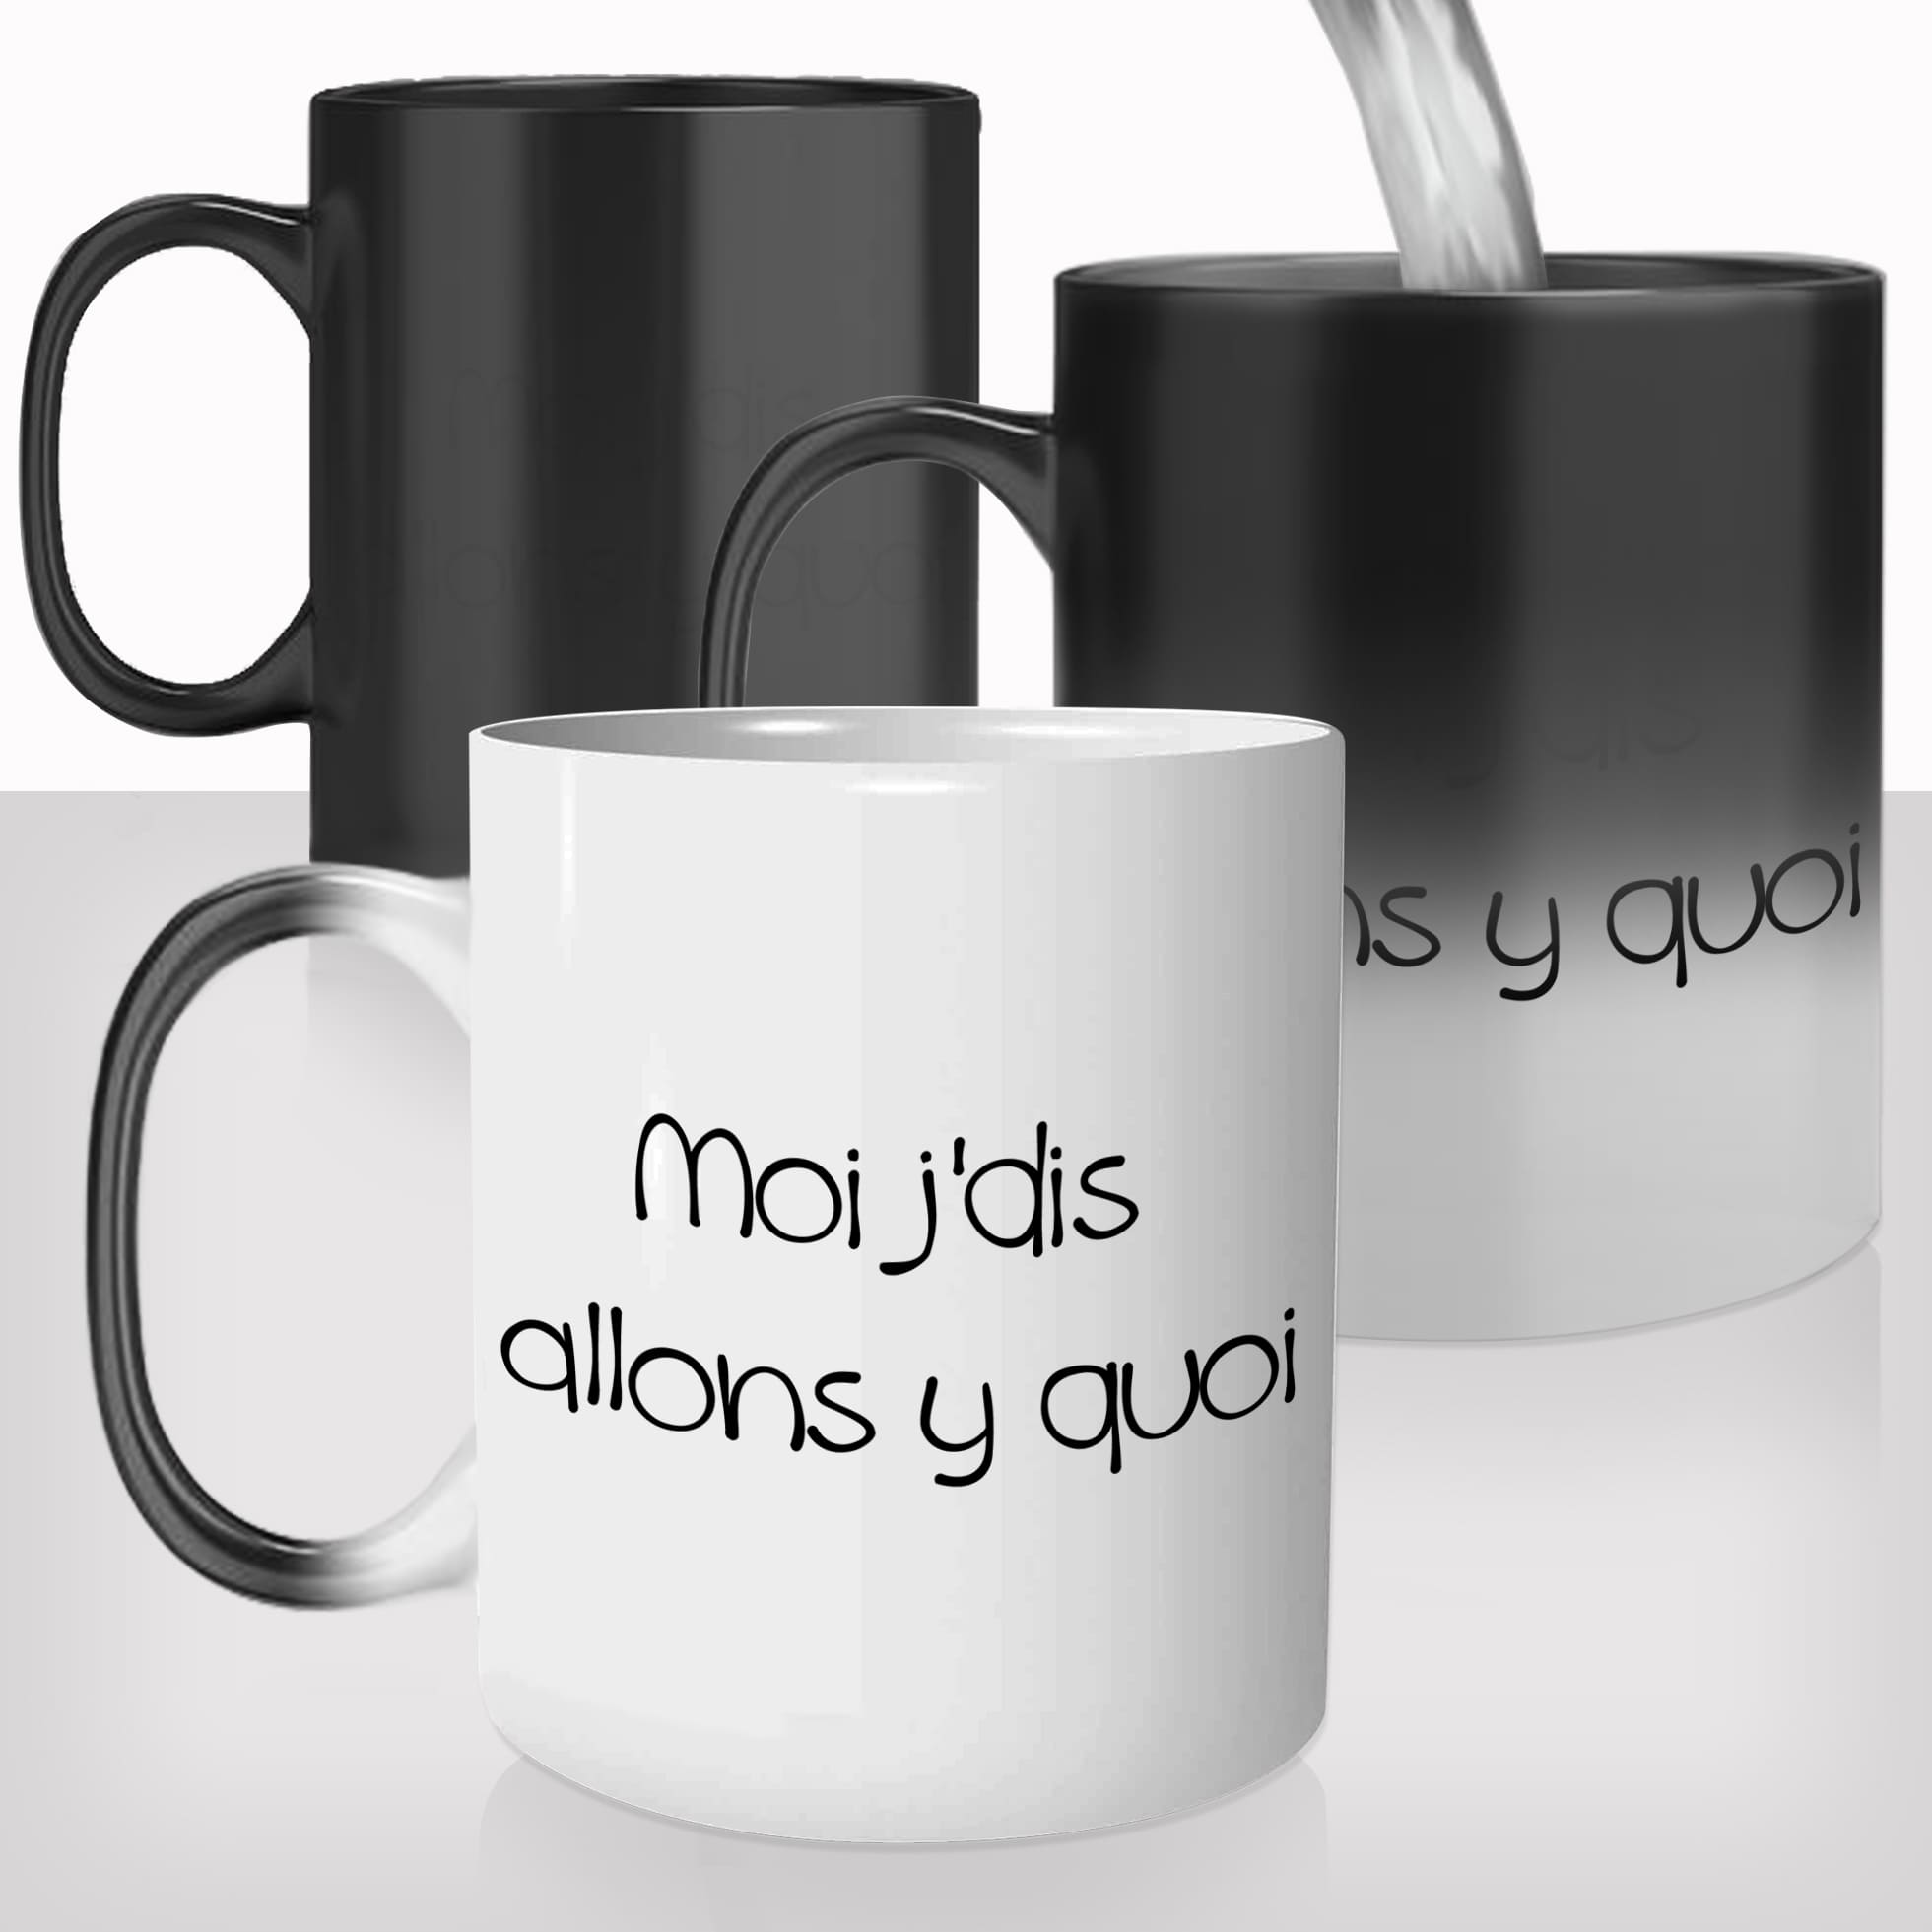 mug-tasse-magique-thermique-thermoreactif-personnalisé-personnalisable-moi-je-dis-allonsy-meme-offrir-idée-cadeau-original-café-thé